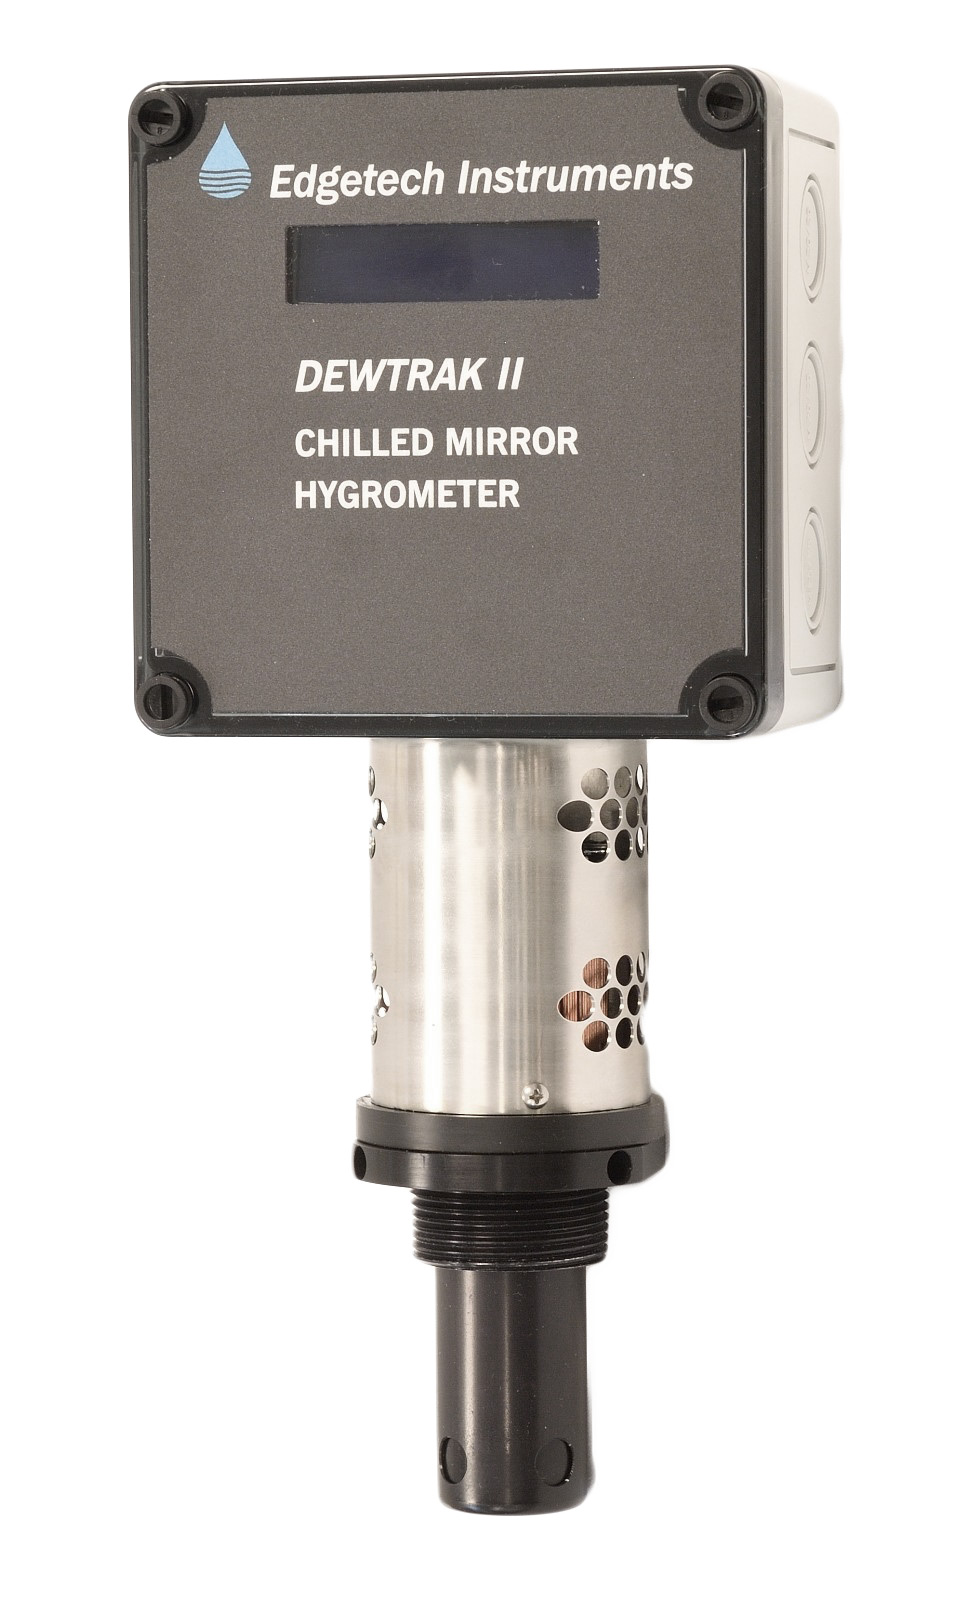 DewTrak II Chilled Mirror Transmitter